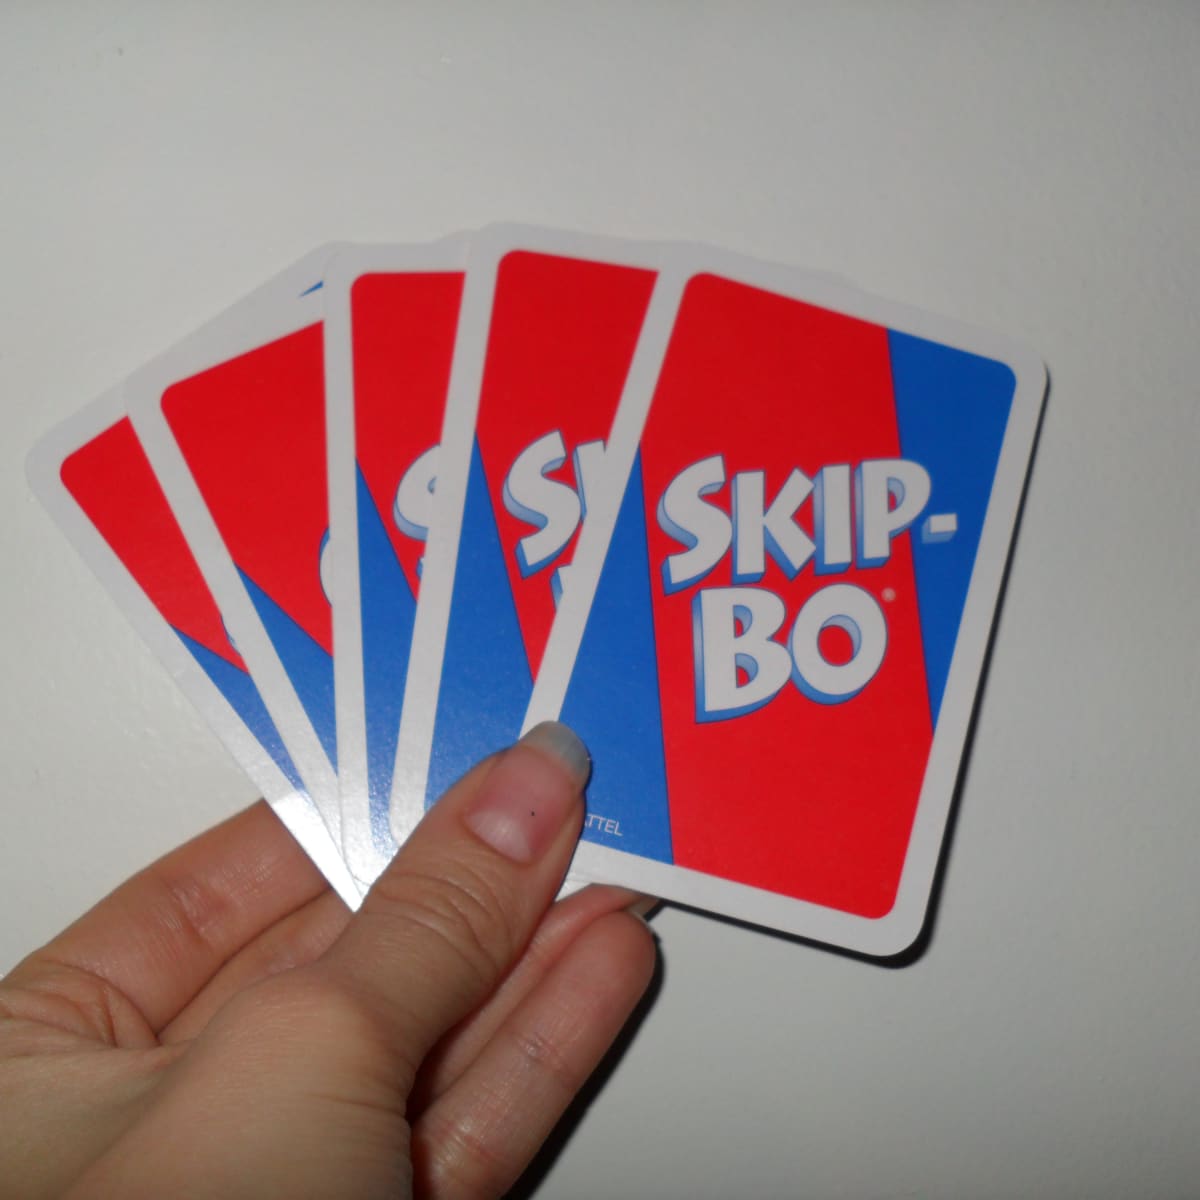 How To Play The Skip Bo Card Game Hobbylark